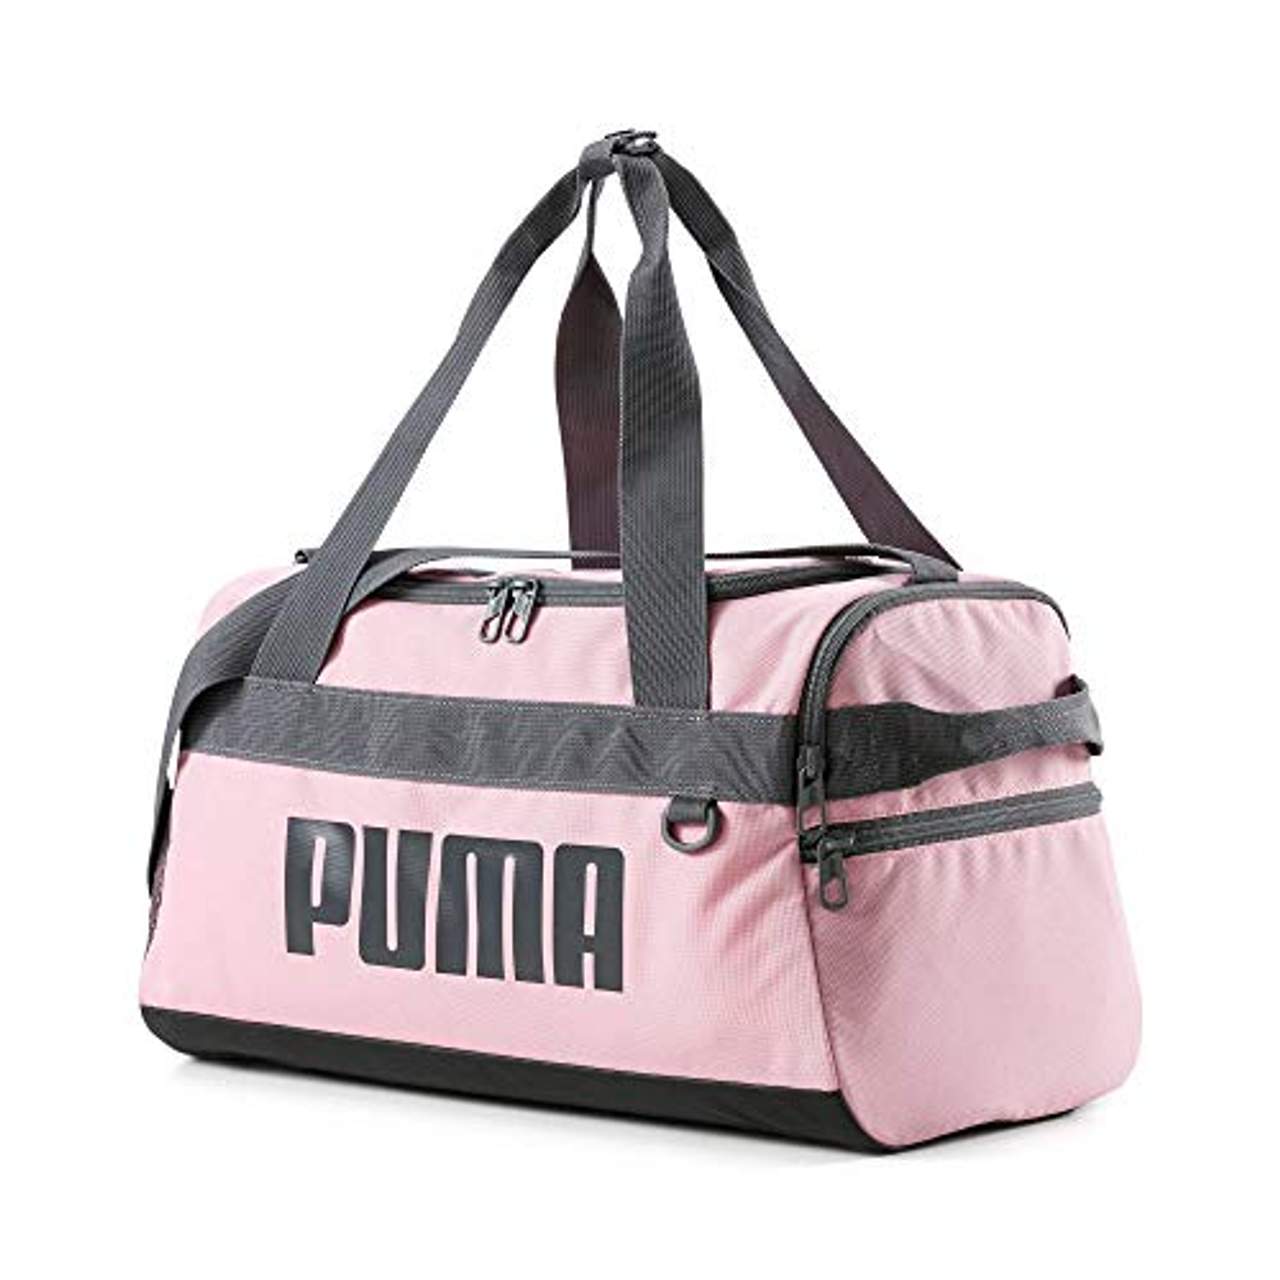 PUMA Unisex Erwachsene Challenger Duffel Bag XS Sporttasche